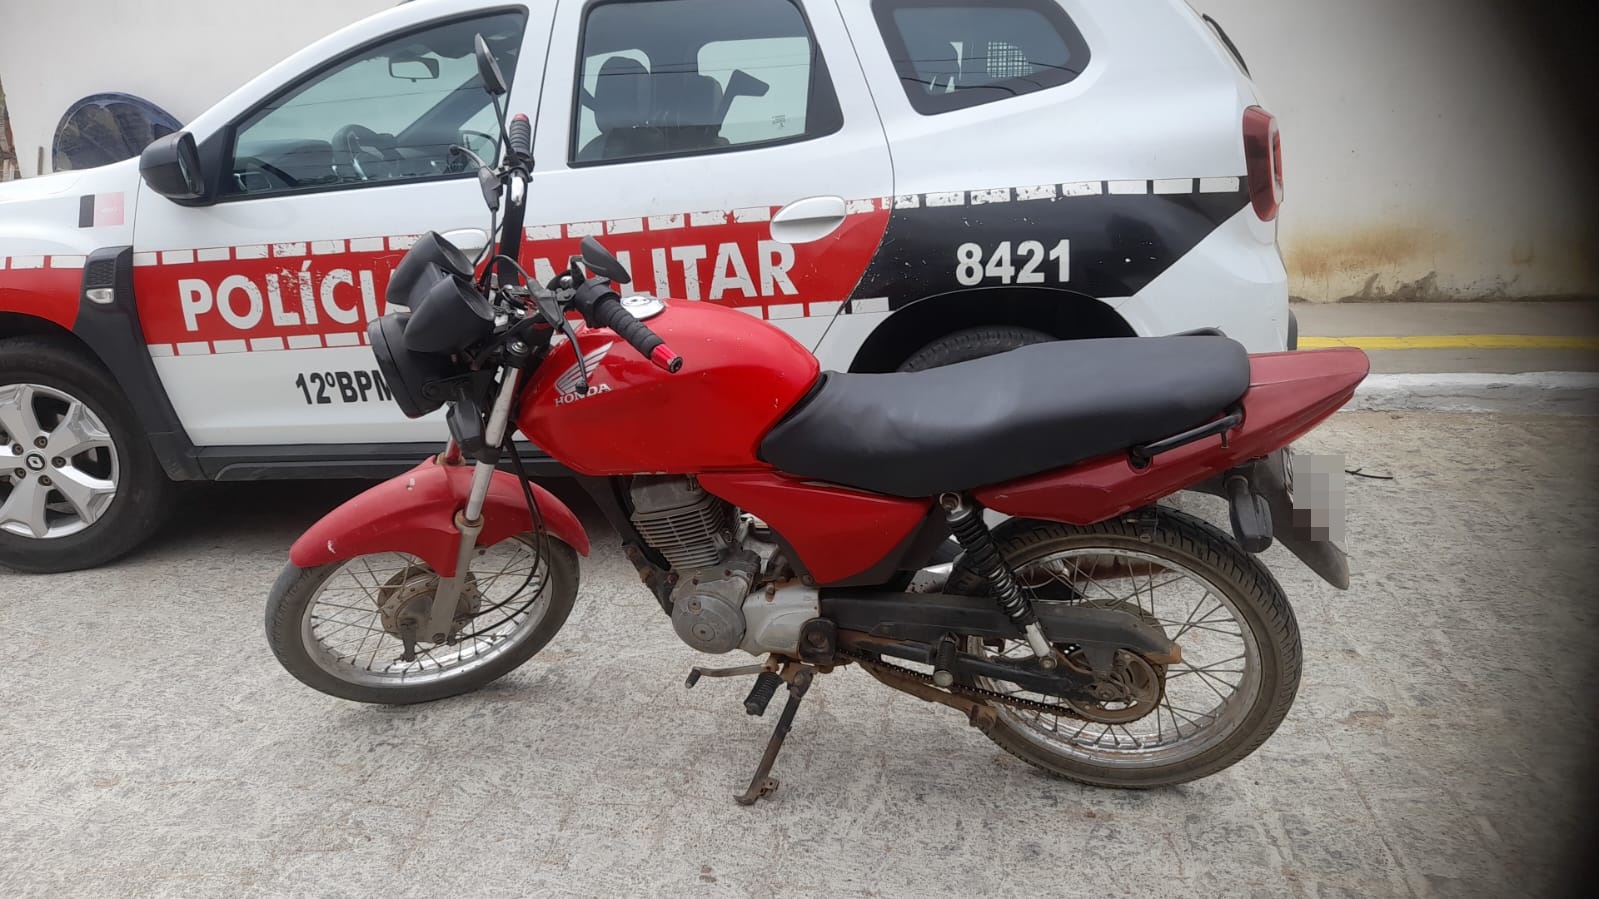 Polícia Militar recupera moto com queixa de roubo, em Belém do Brejo do Cruz